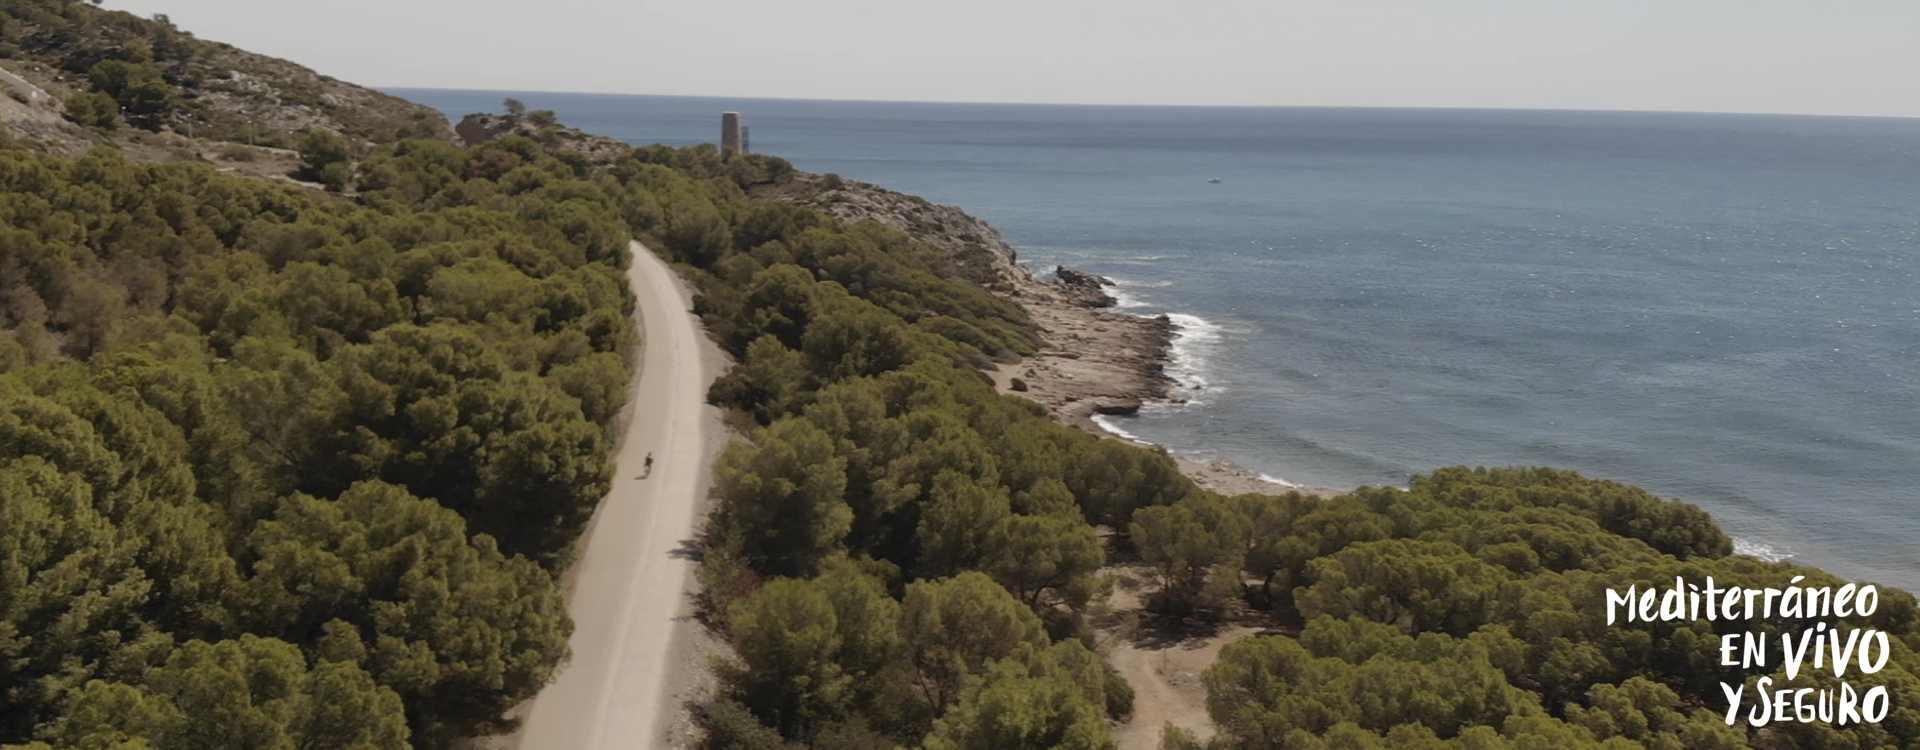 Paesaggio naturale della Via Verde del Mar che collega la costa e la montagna.